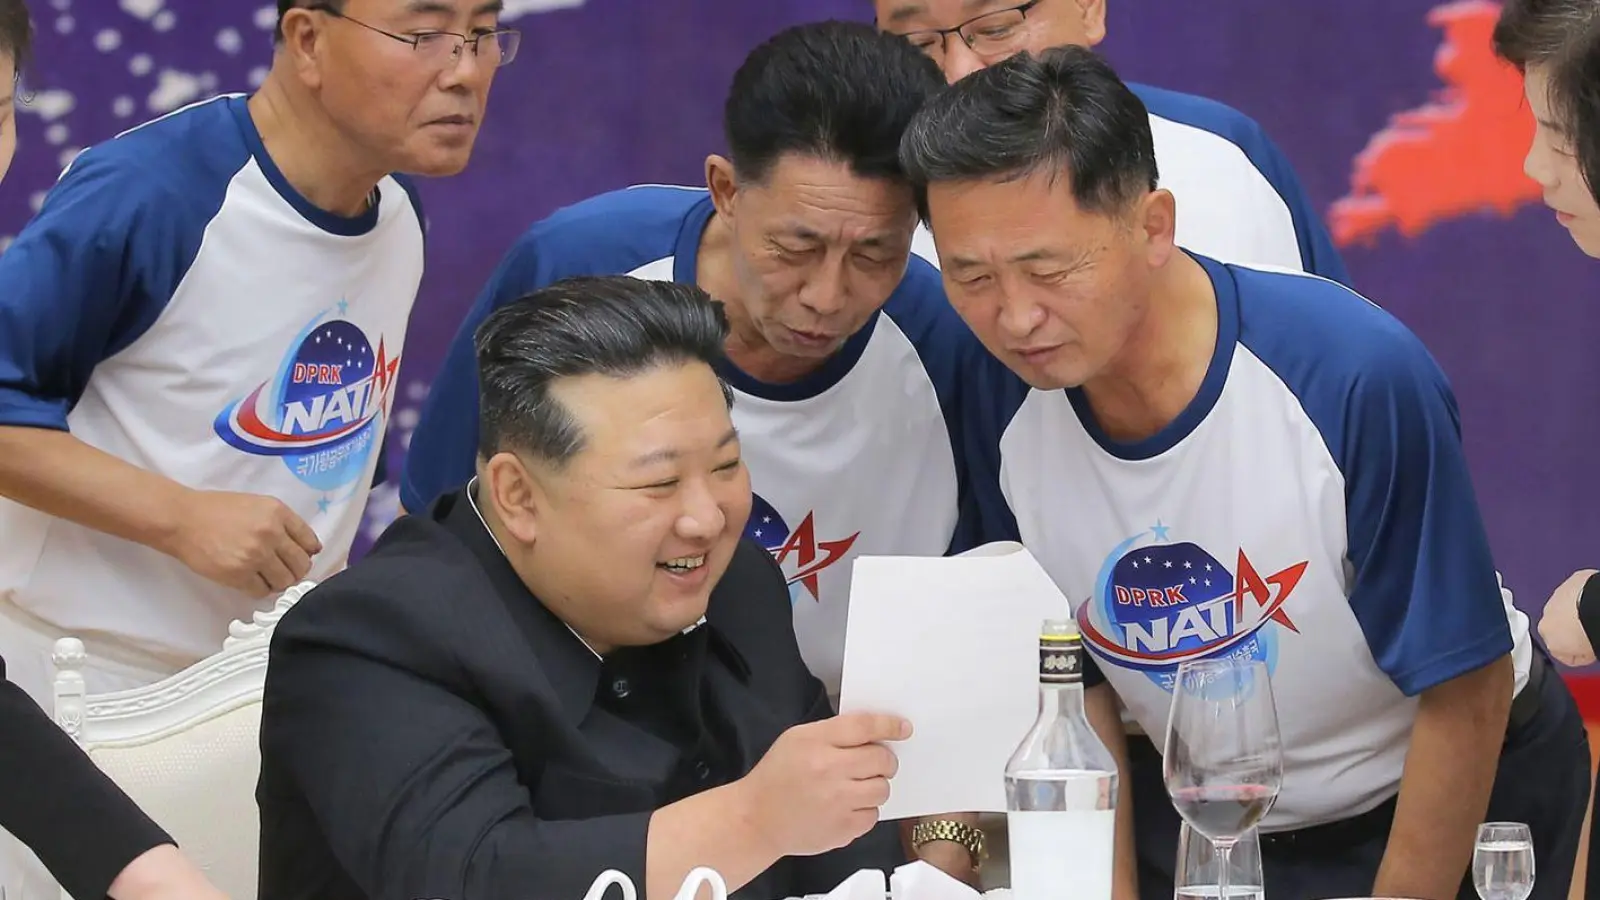 Nordkoreas Machthaber Kim Jong Un hatte angekündigt, sein Land werde in diesem Jahr drei weitere Aufklärungssatelliten starten lassen. (Foto: Uncredited/KCNA/KNS/dpa)